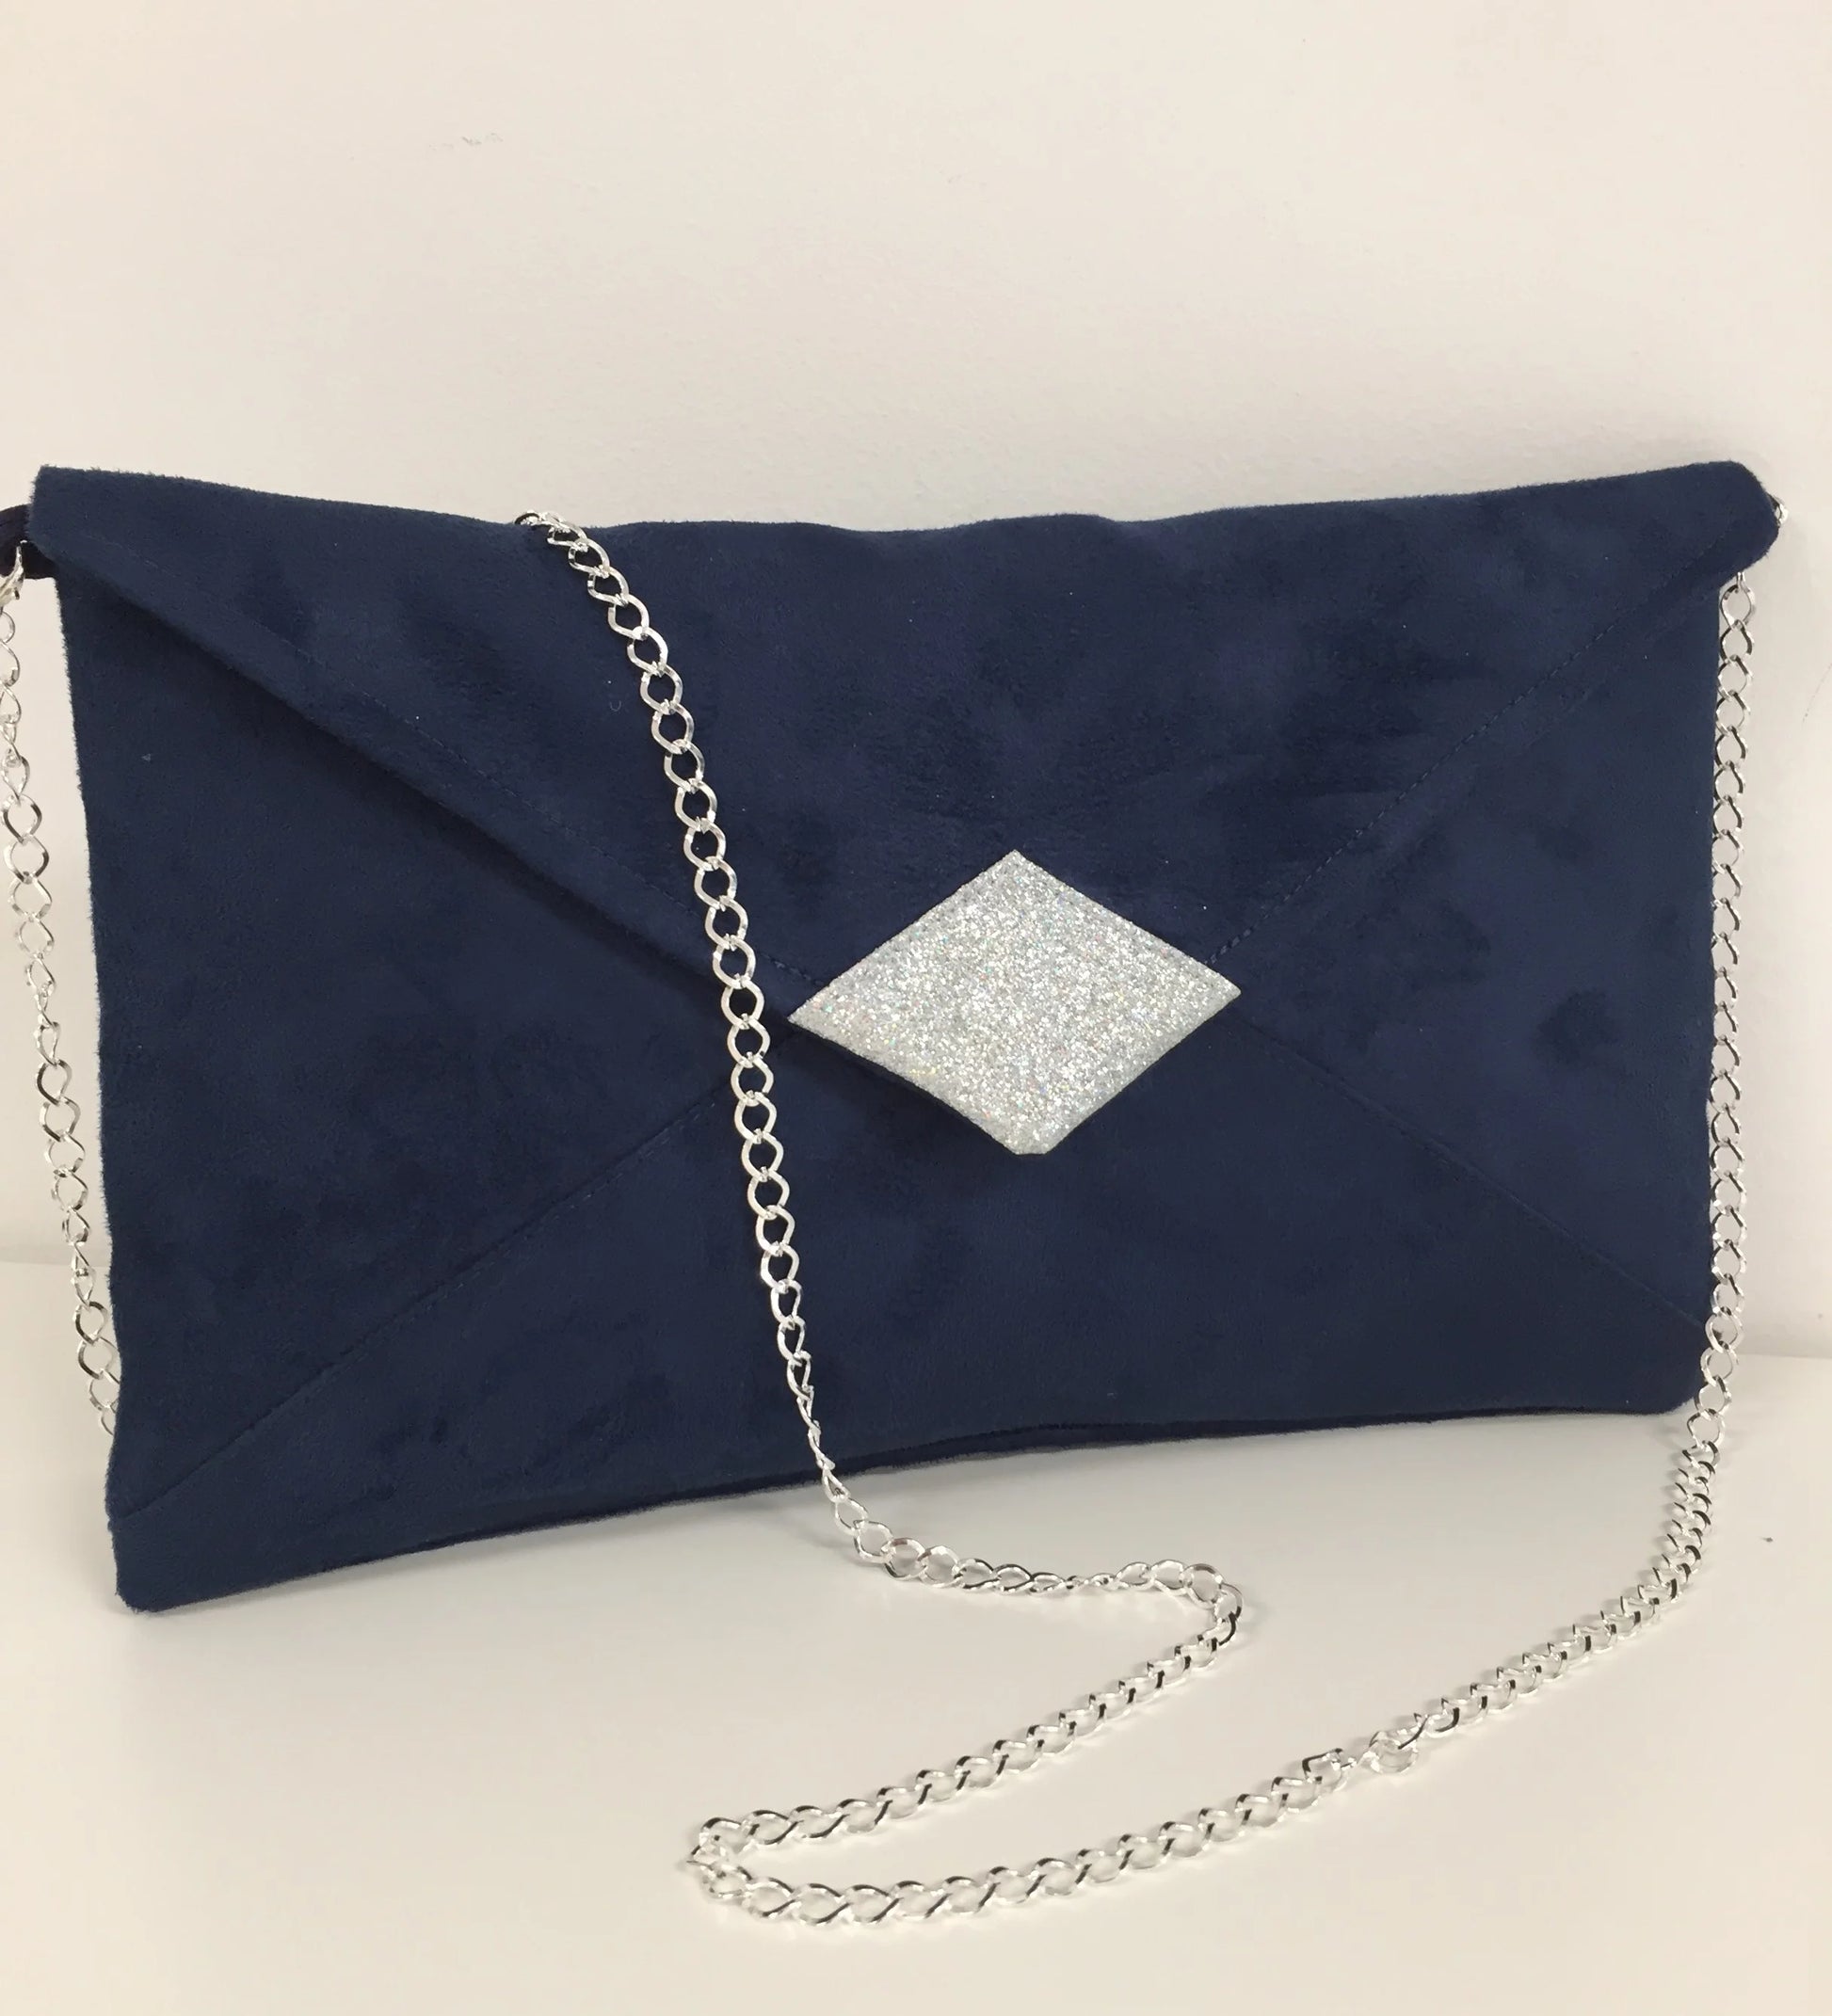 Le sac pochette Isa en suédine bleu marine avec paillettes argentées et chainette amovible.